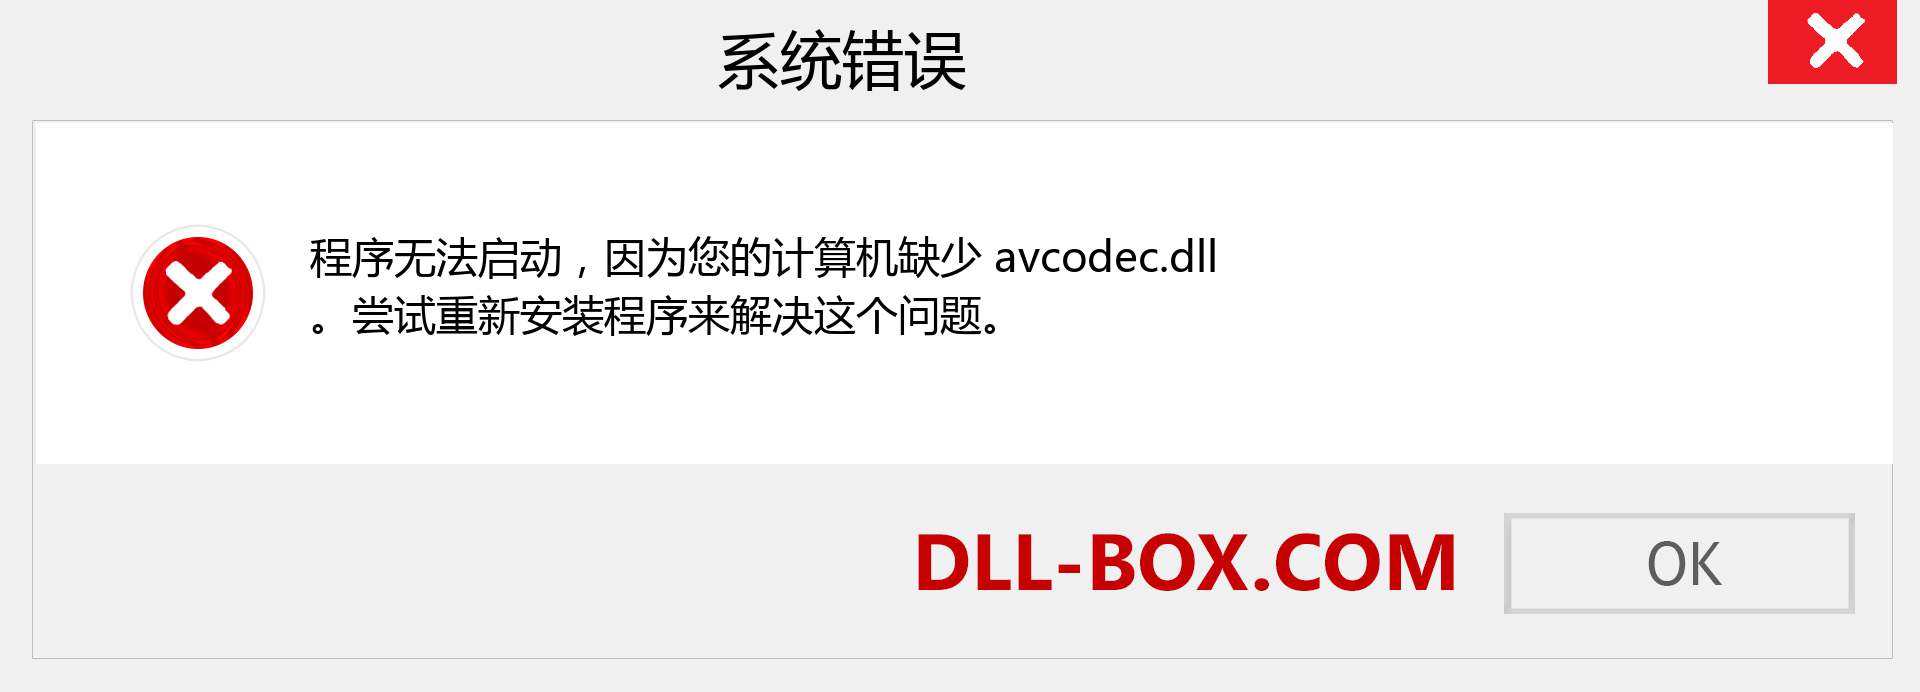 avcodec.dll 文件丢失？。 适用于 Windows 7、8、10 的下载 - 修复 Windows、照片、图像上的 avcodec dll 丢失错误